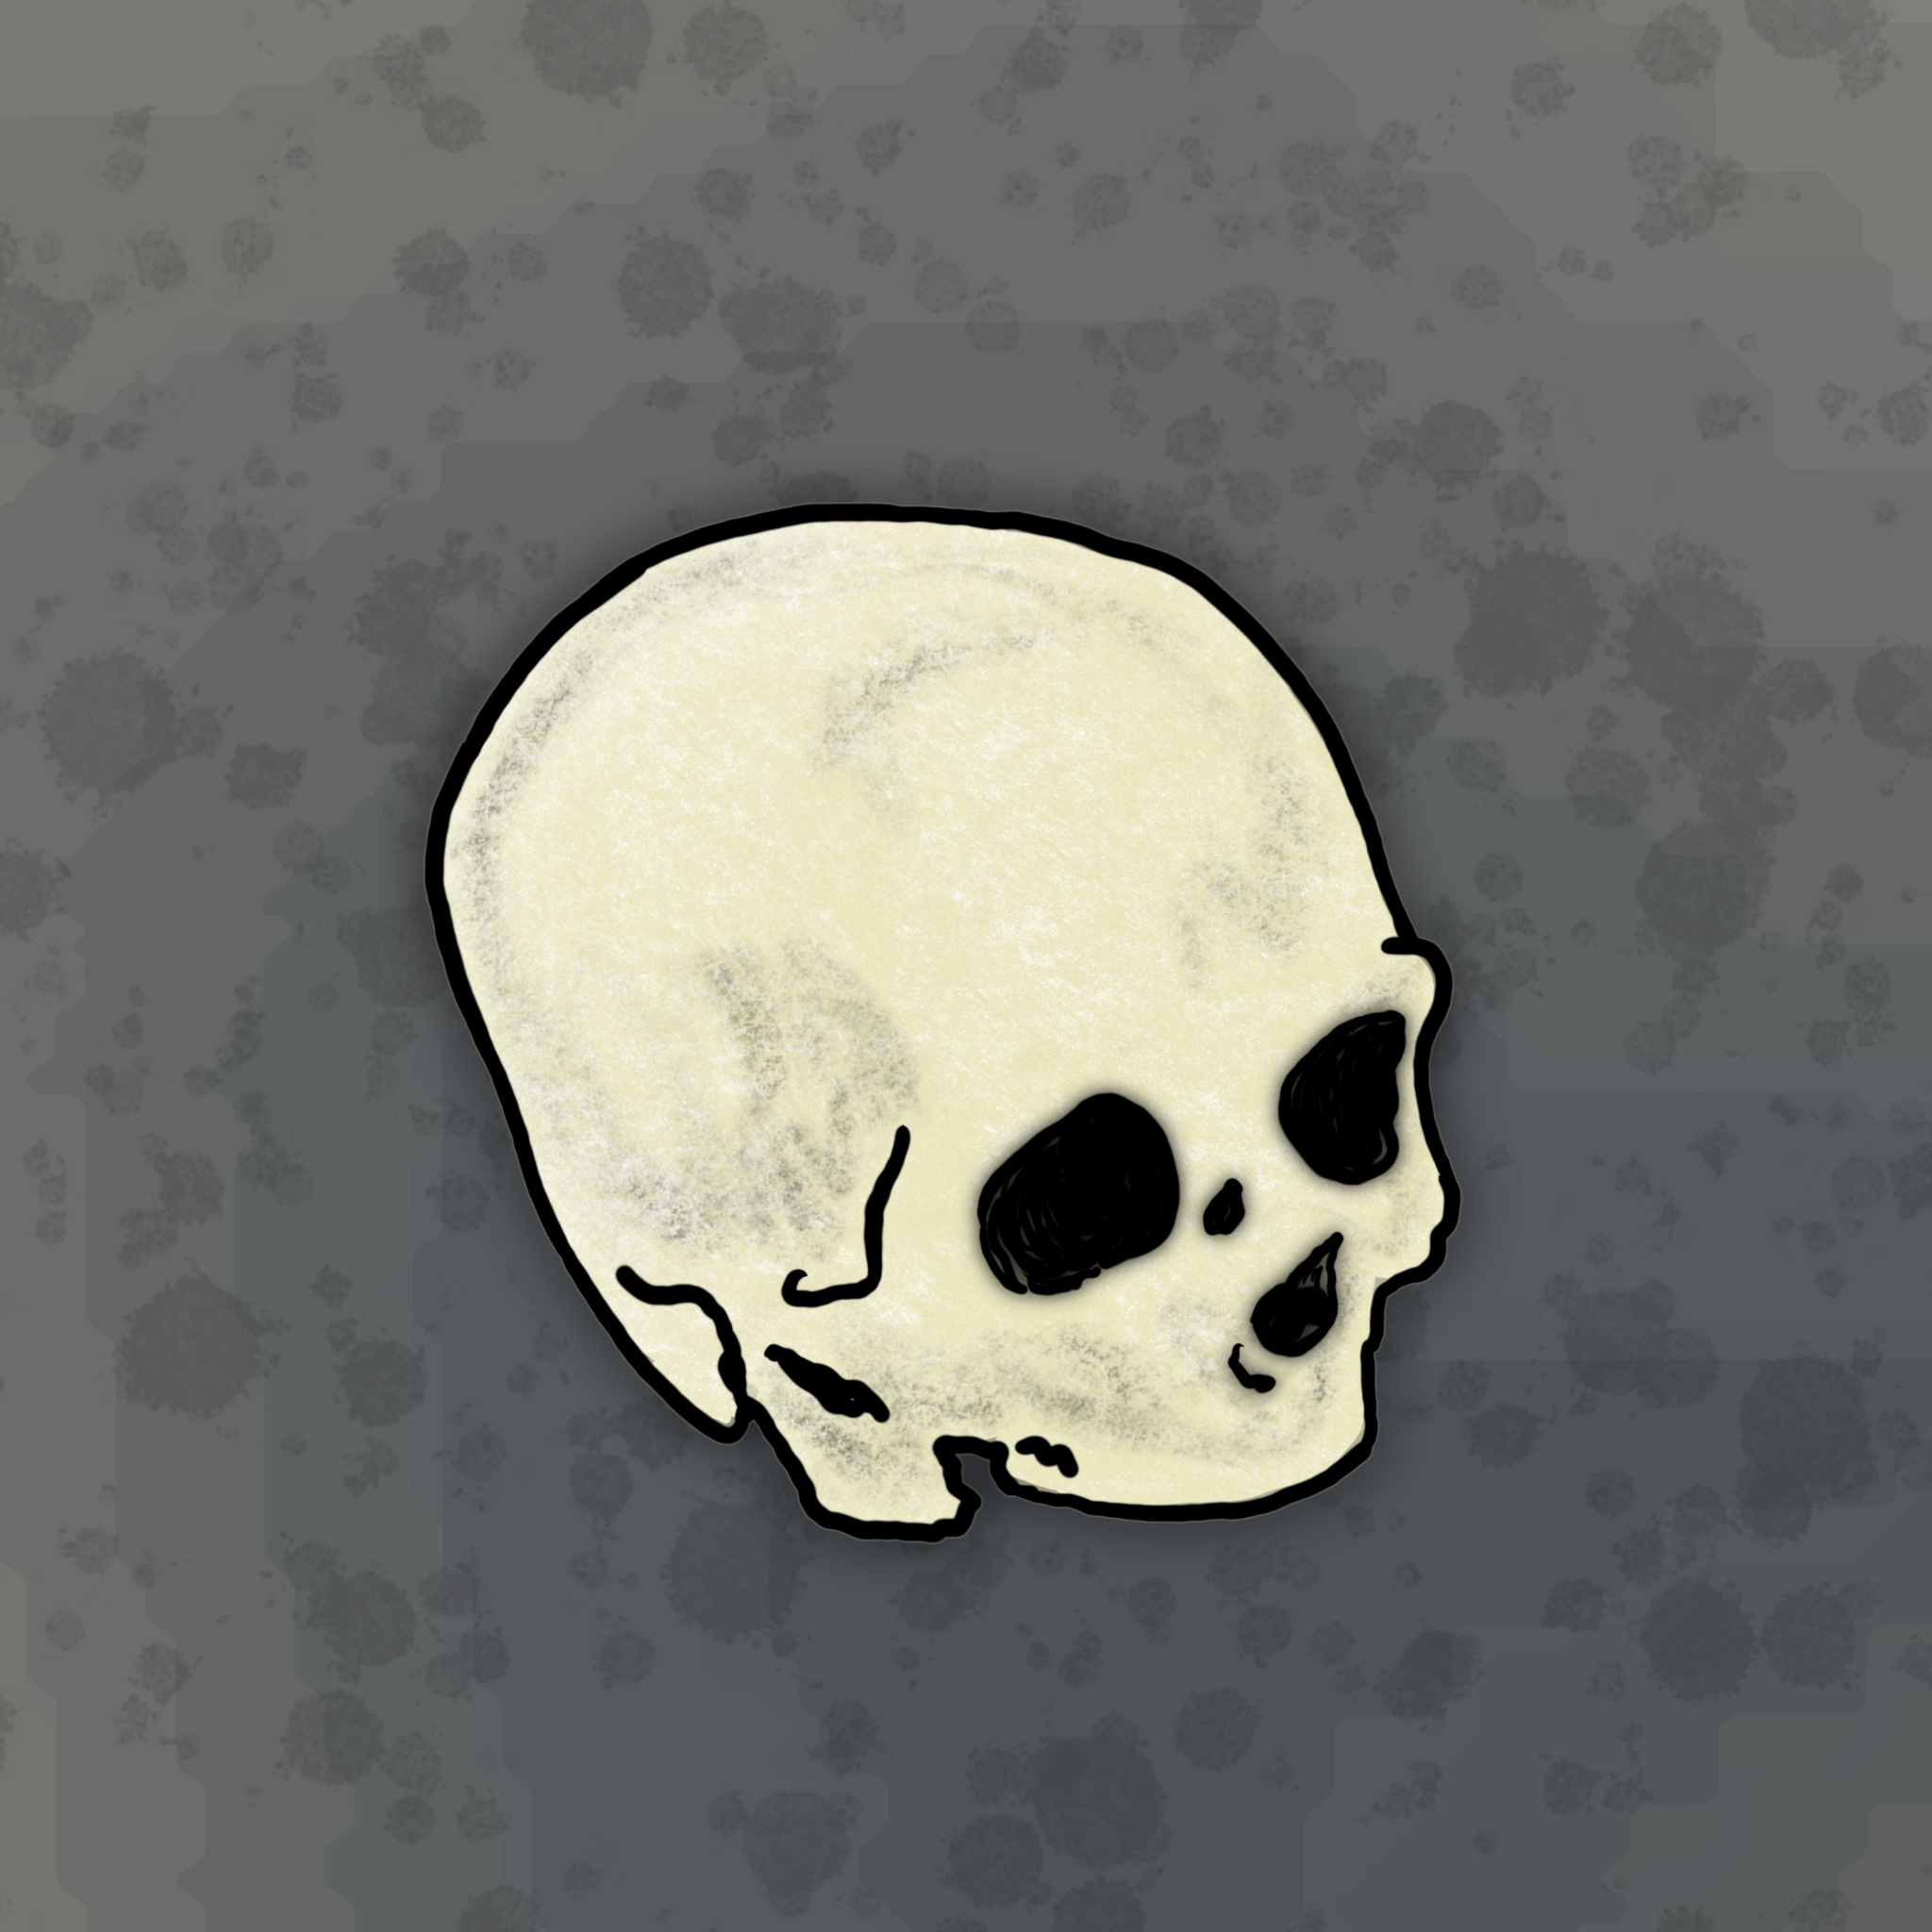 A skull sketch done in Procreate.